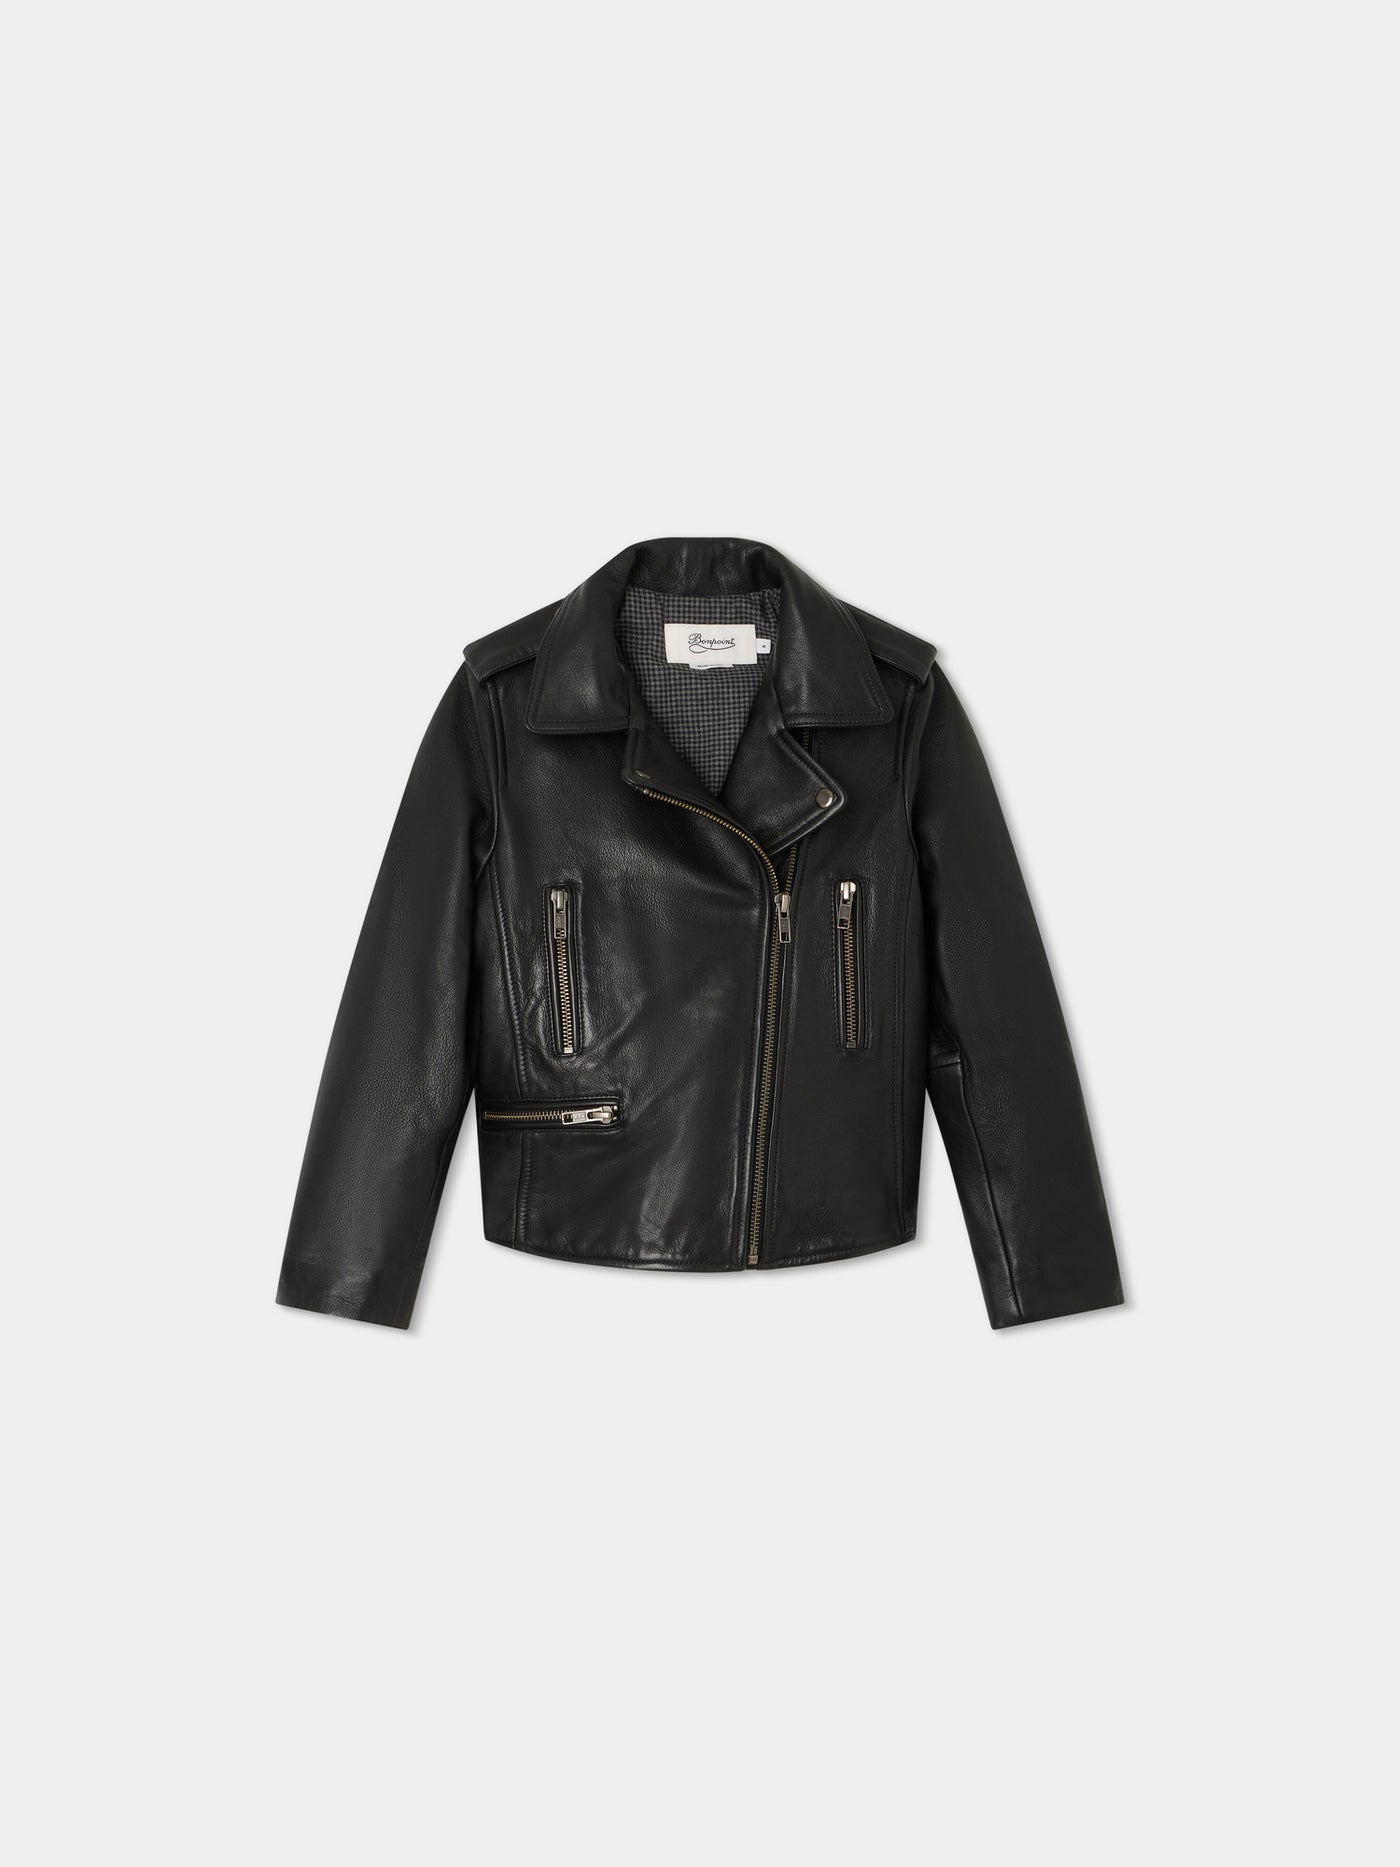 Temple Leather Jacket black